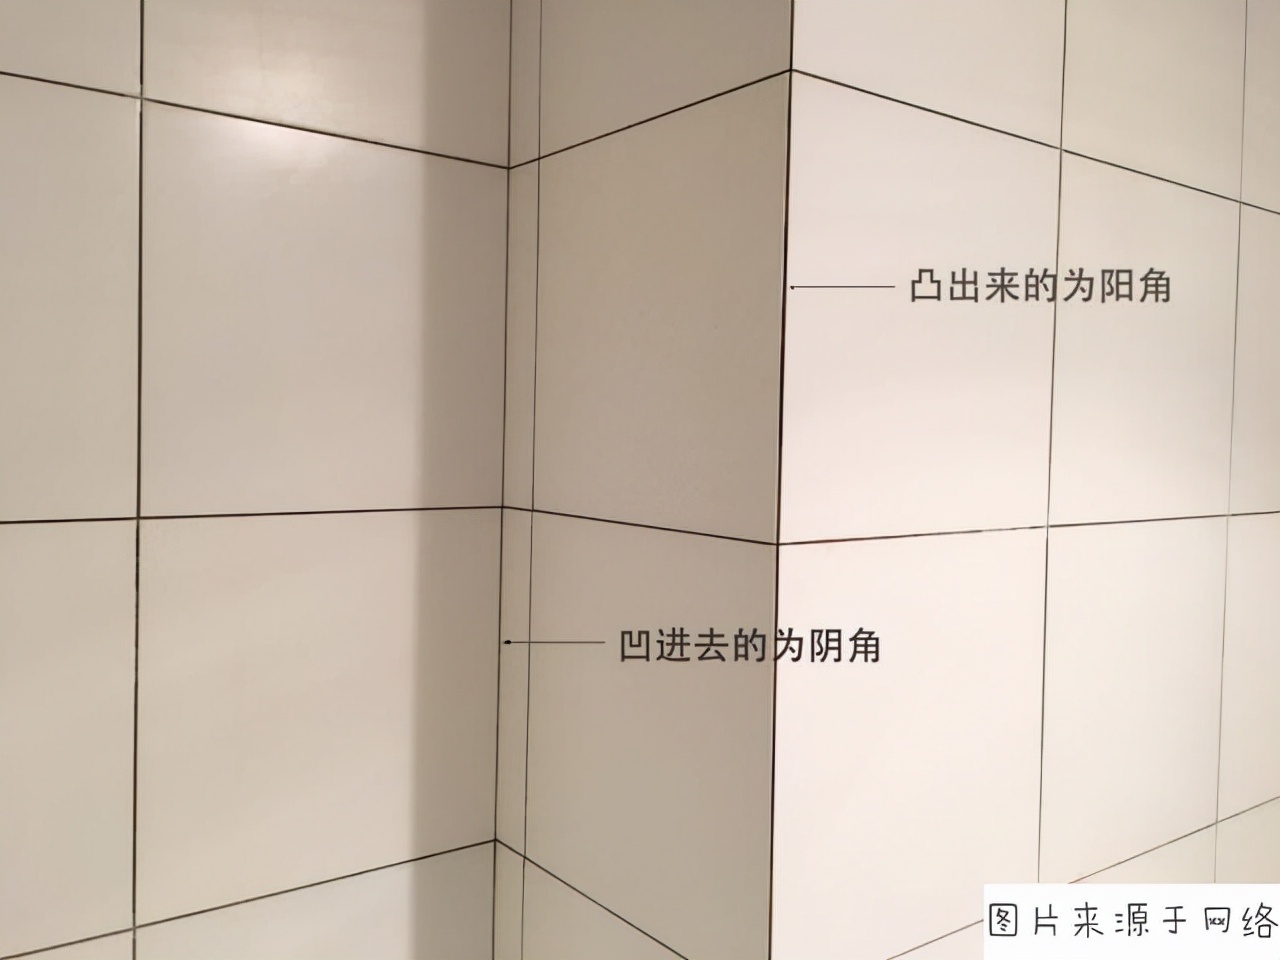 厨房墙面砖如何选择?不光要好看,耐脏也很重要!_装修攻略-北京搜狐焦点家居